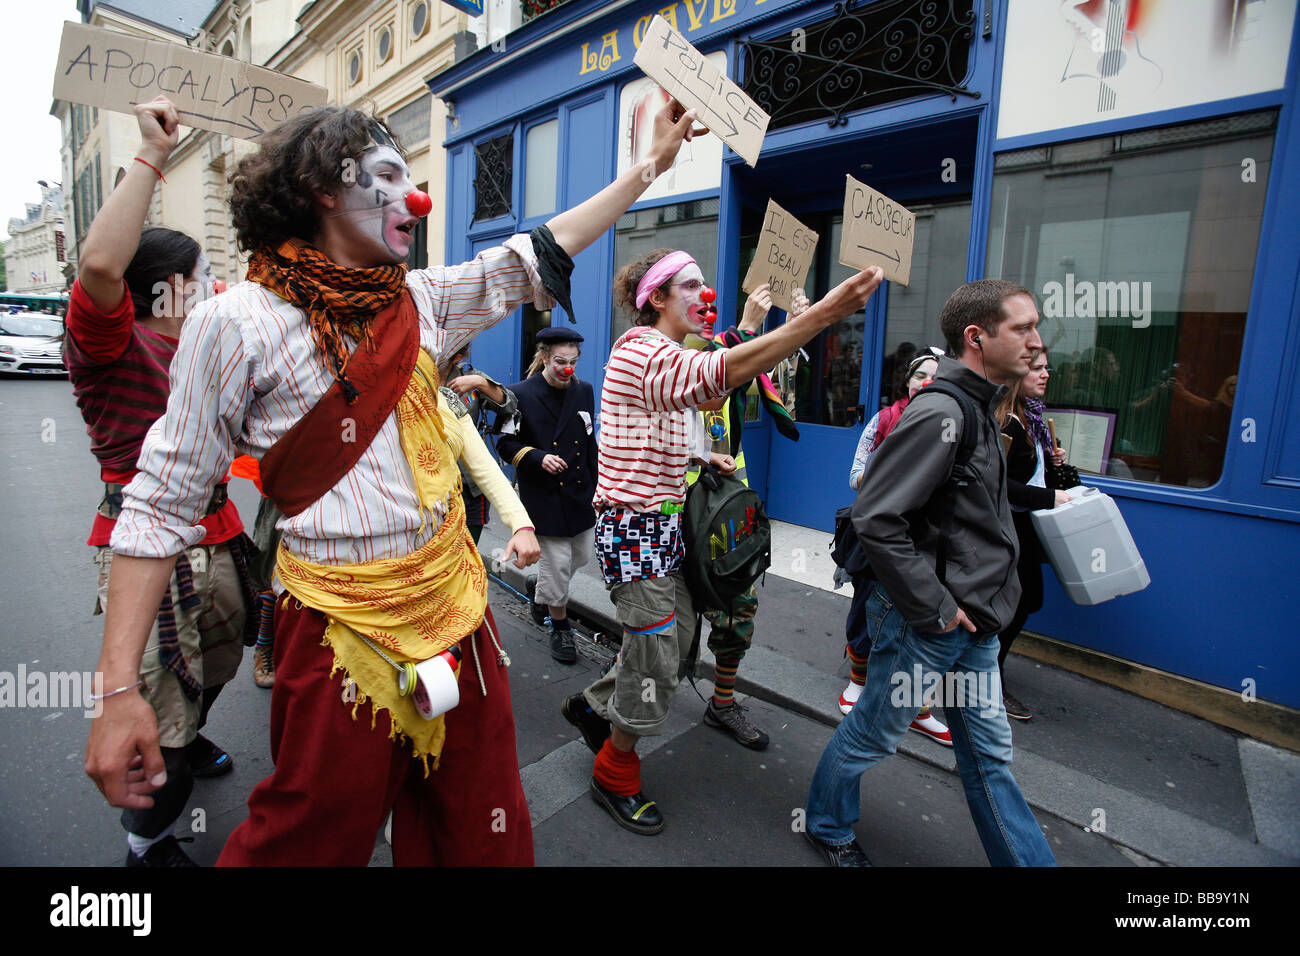 Gli studenti universitari vestito come clown seguire una pianura vestiti poliziotto durante una manifestazione in strada, Parigi Foto Stock